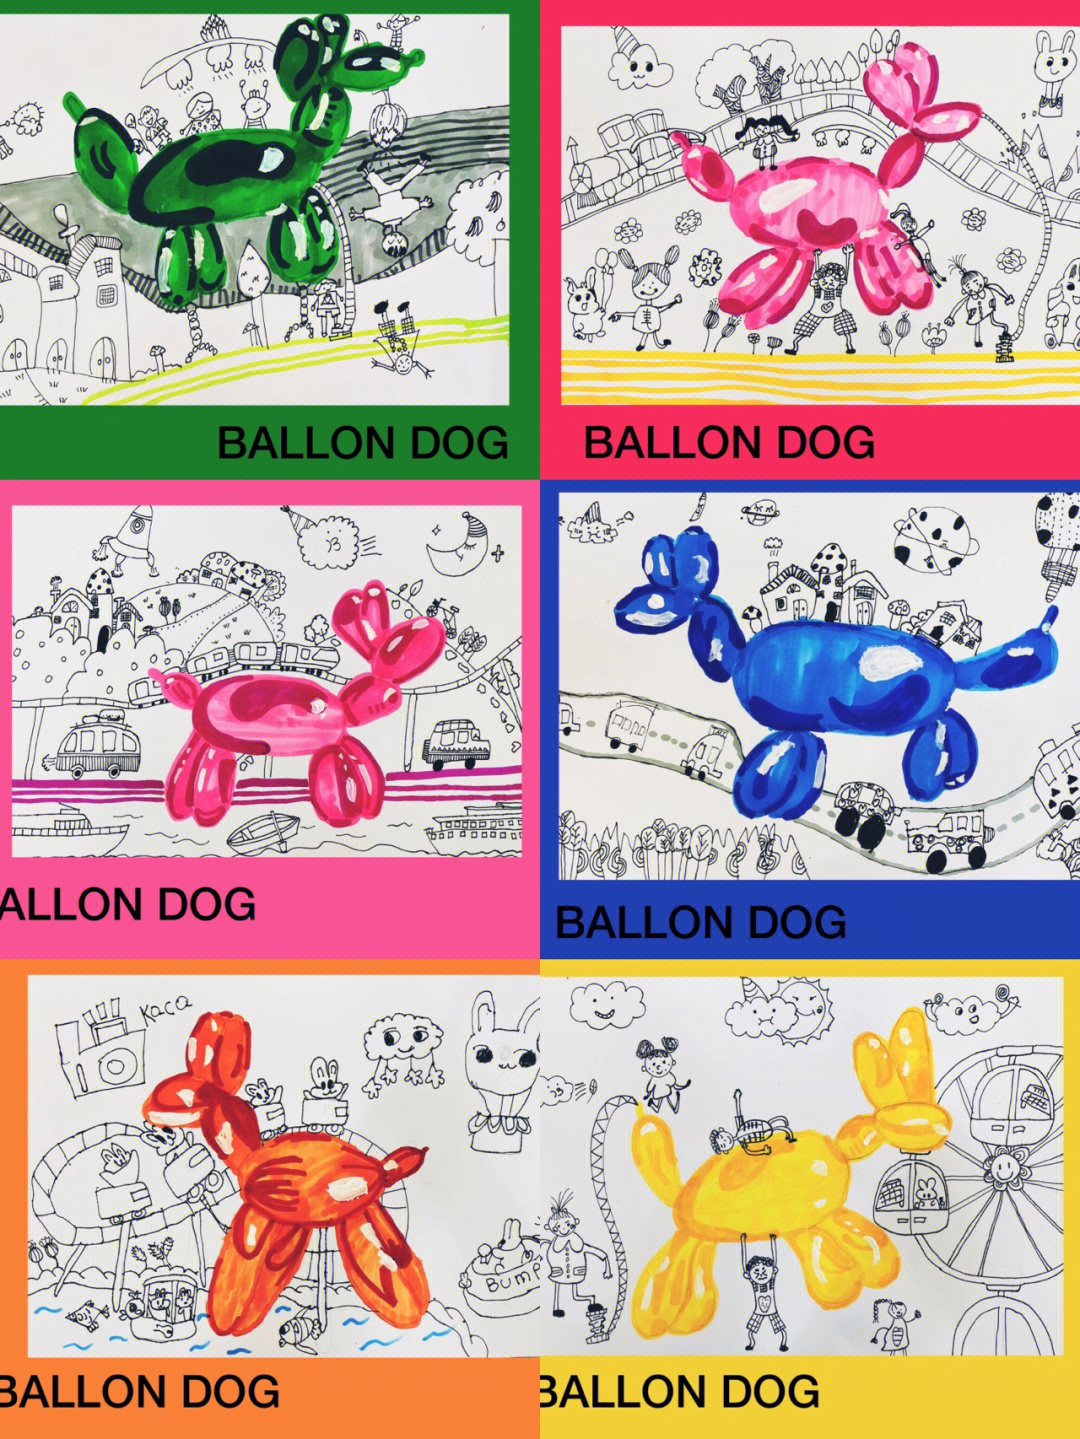 儿童创意画气球狗的联想